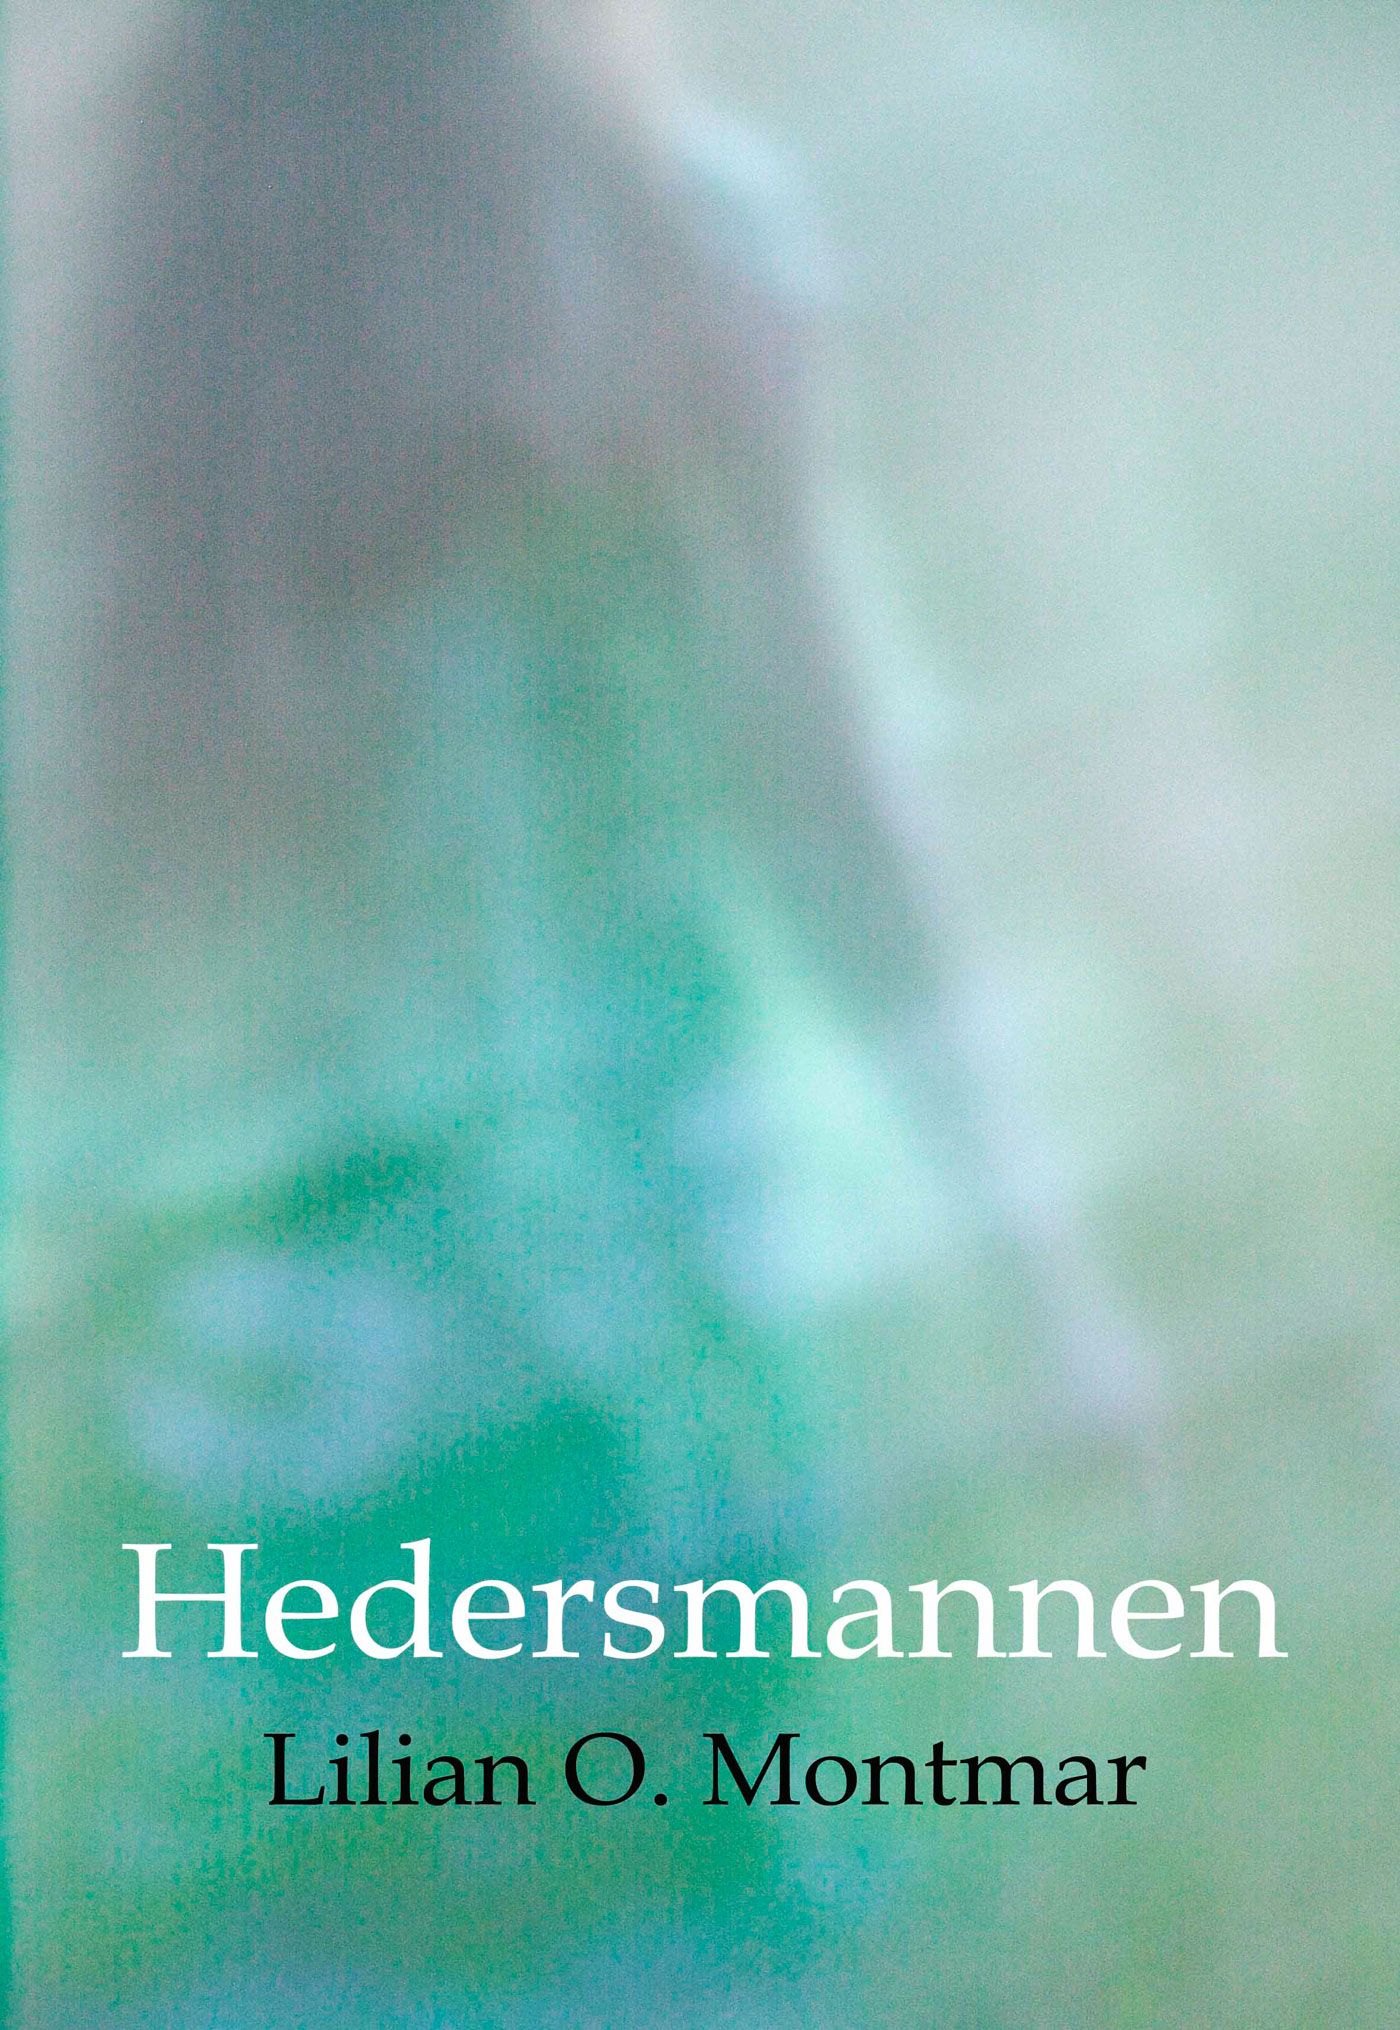 Hedersmannen, audiobook by Lilian O. Montmar